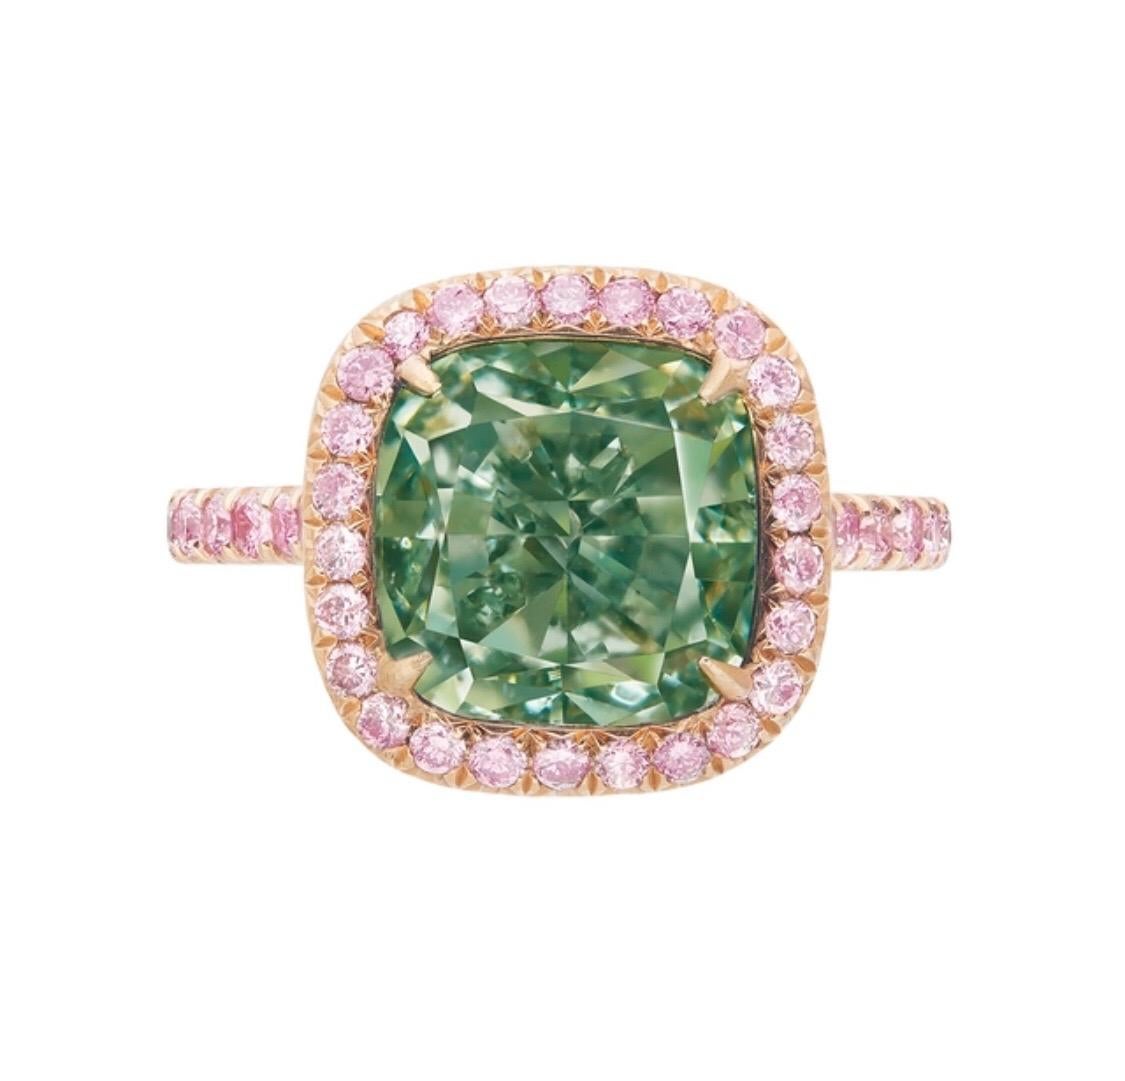 6 carat green diamond